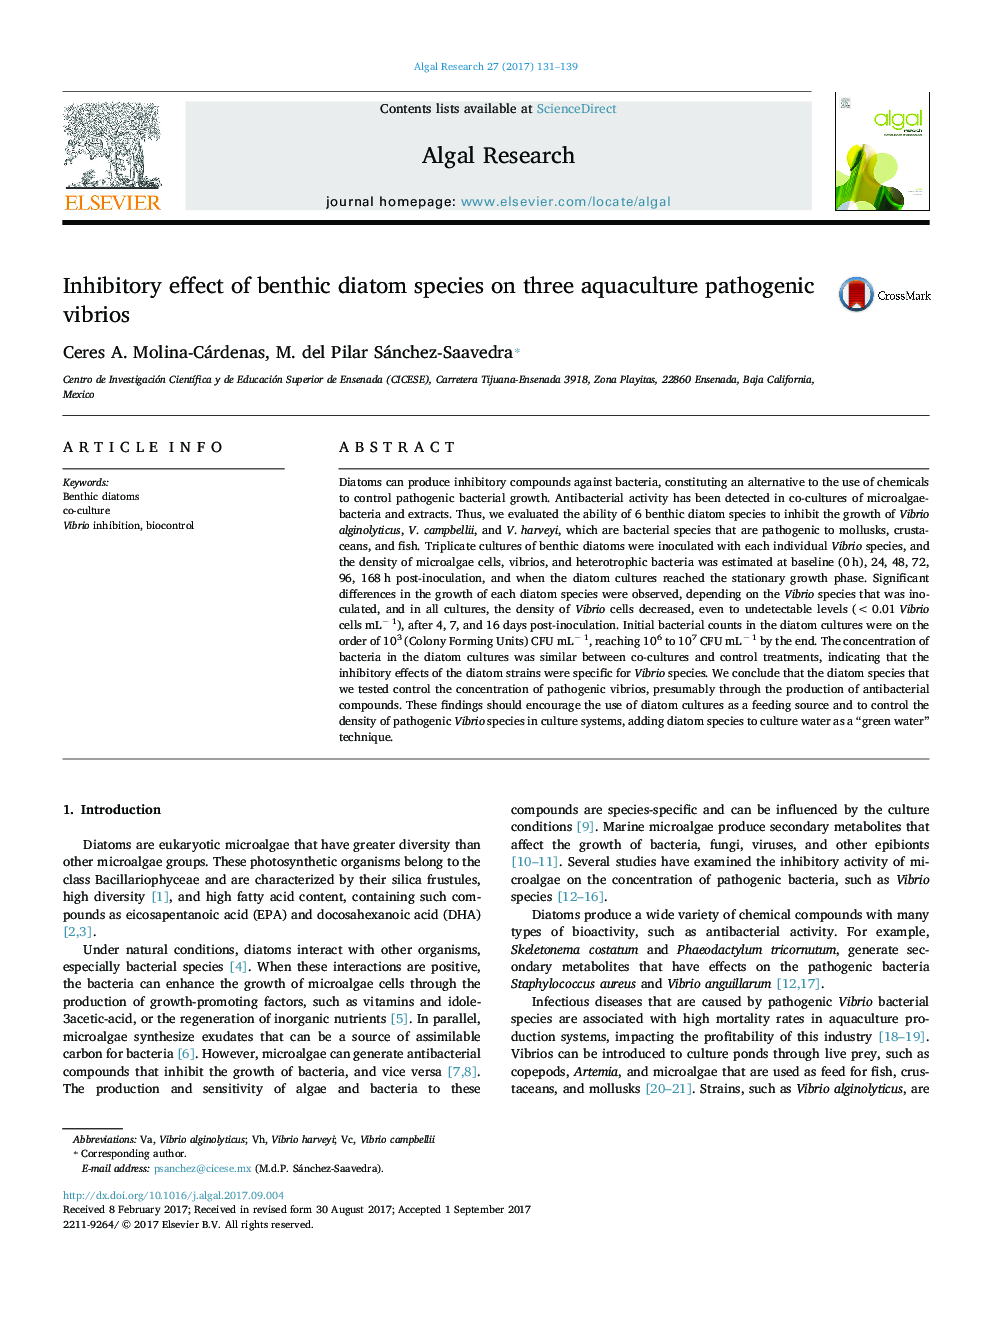 Inhibitory effect of benthic diatom species on three aquaculture pathogenic vibrios